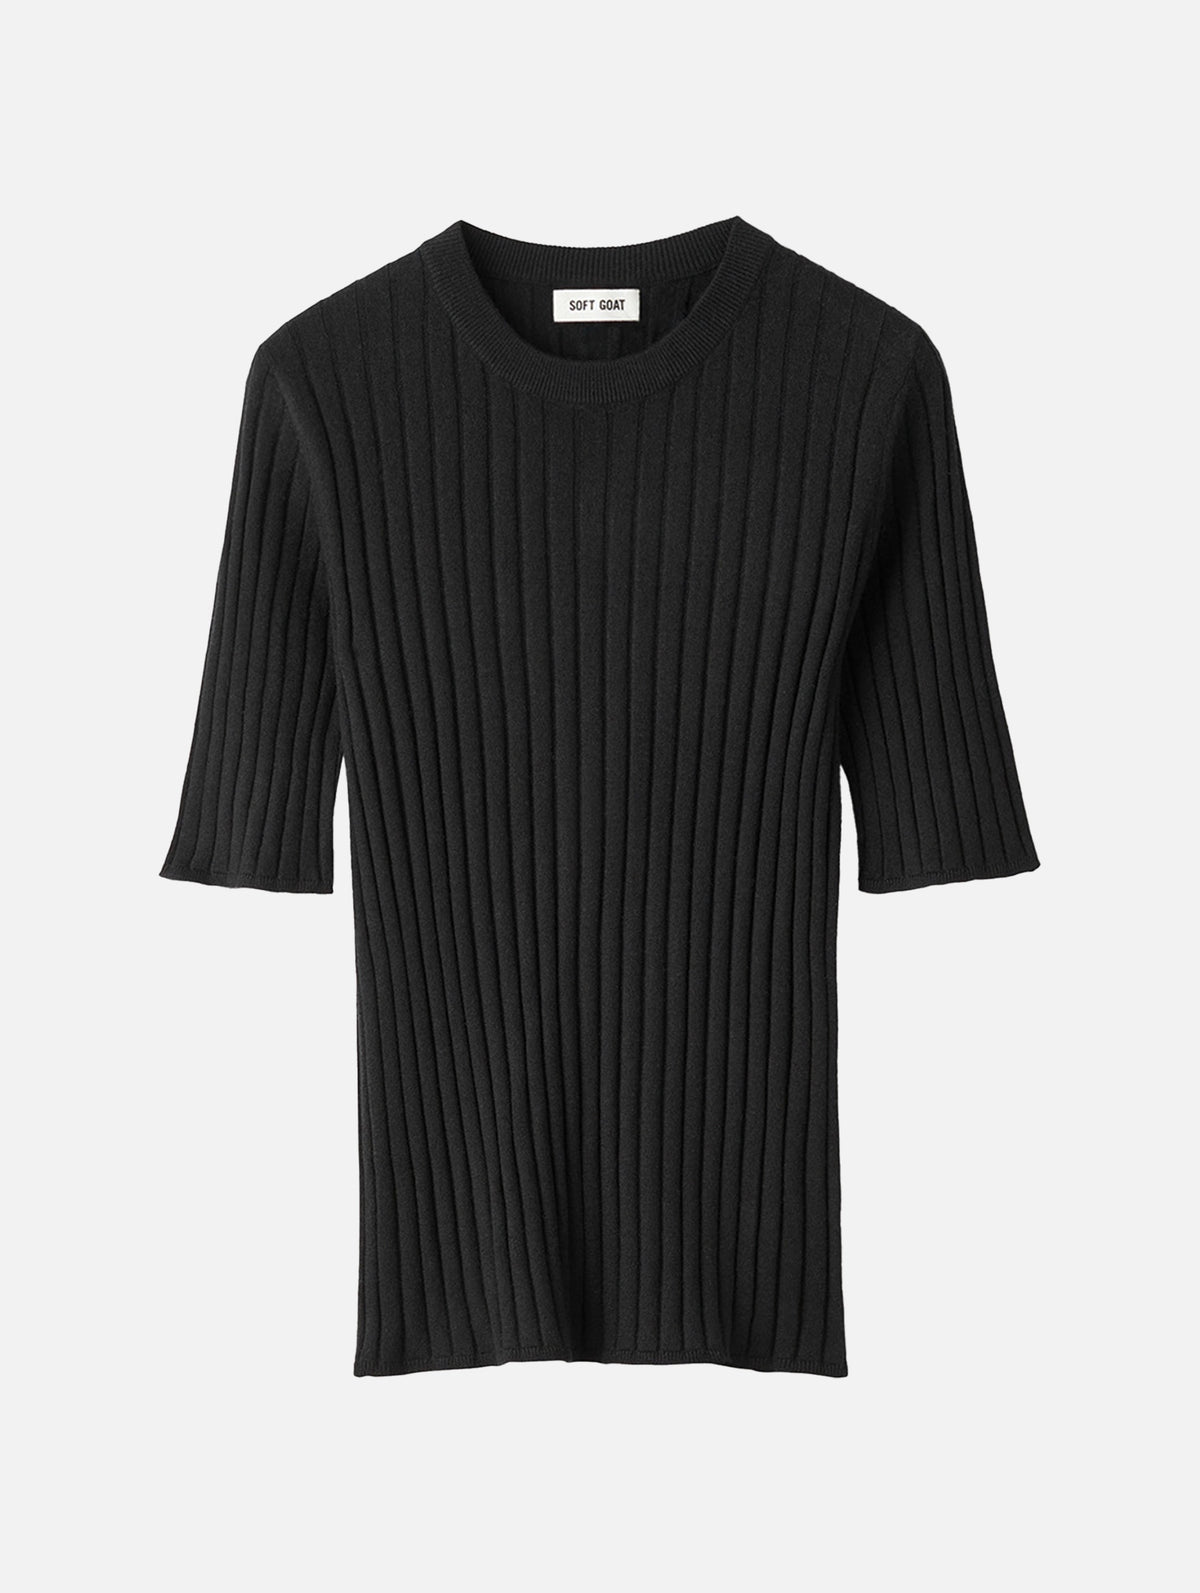 Fine Knit Rib T-Shirt in Black